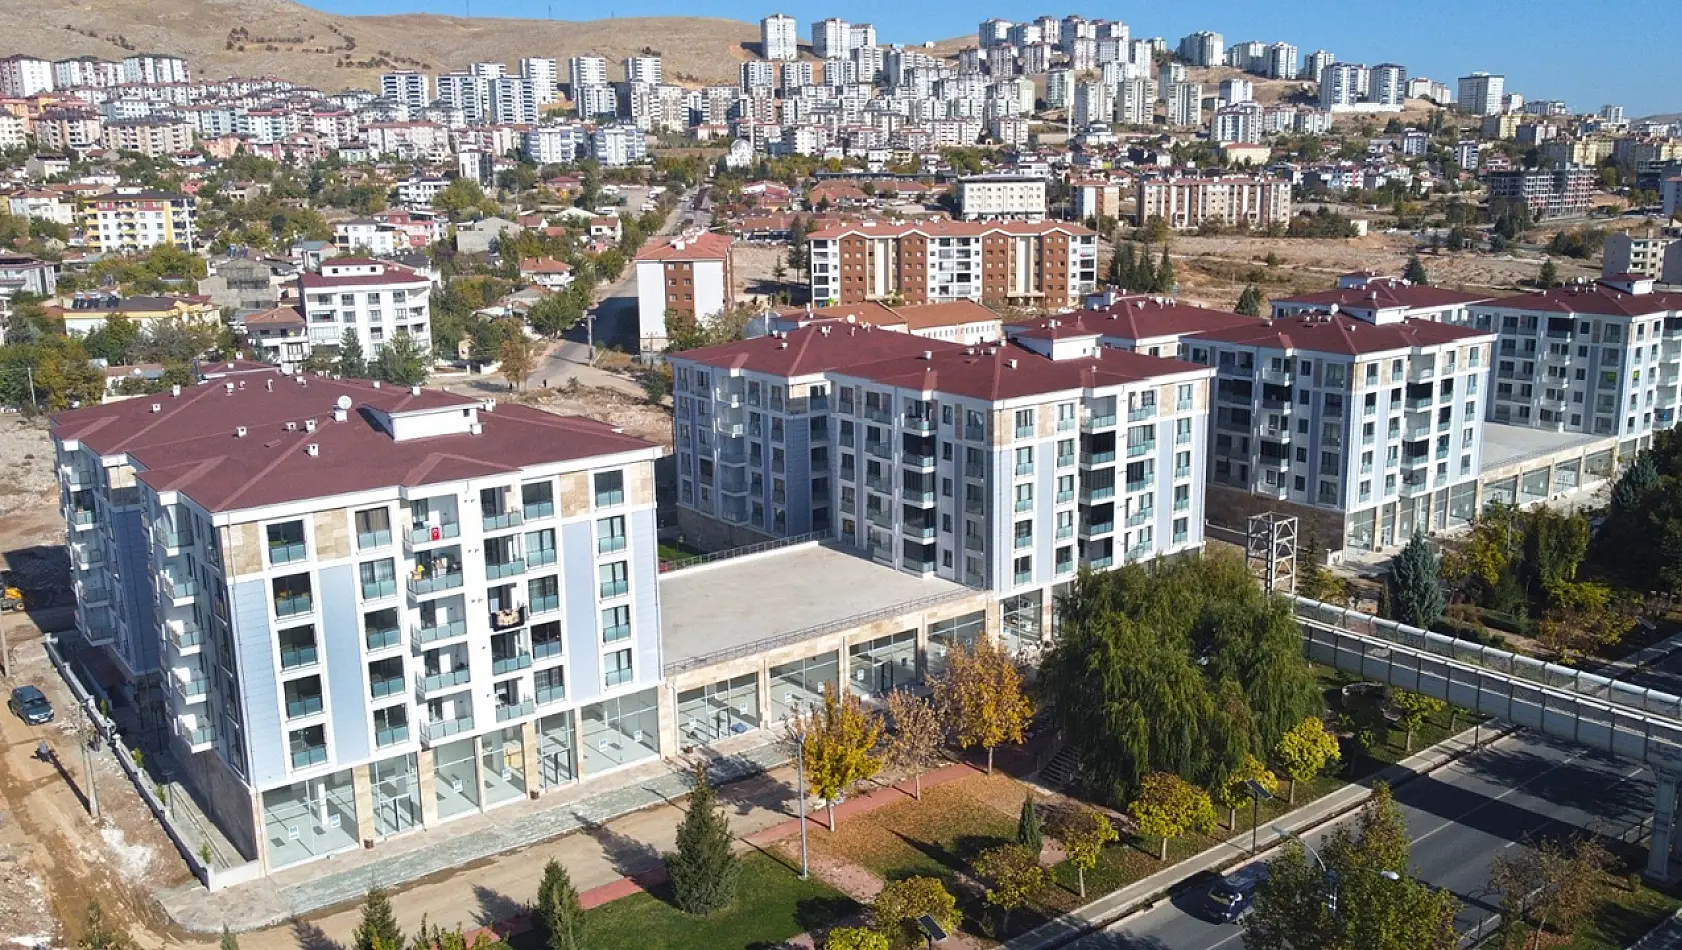 Elazığ Belediyesi Uygun Fiyata Konut, Arsa ve İş Yeri Satışı Yapacak!